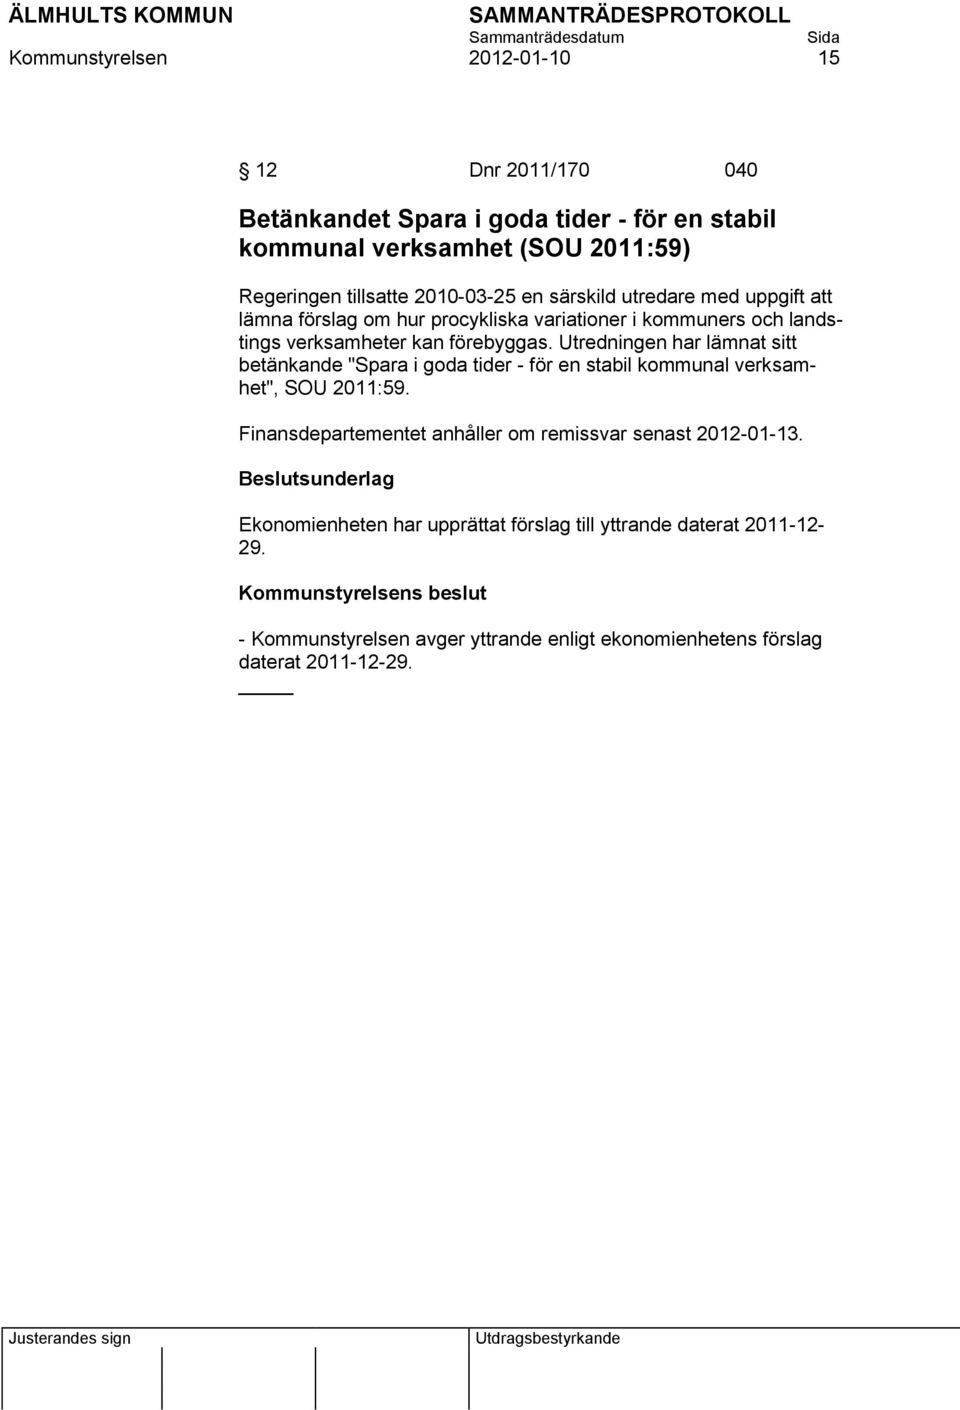 Utredningen har lämnat sitt betänkande "Spara i goda tider - för en stabil kommunal verksamhet", SOU 2011:59.